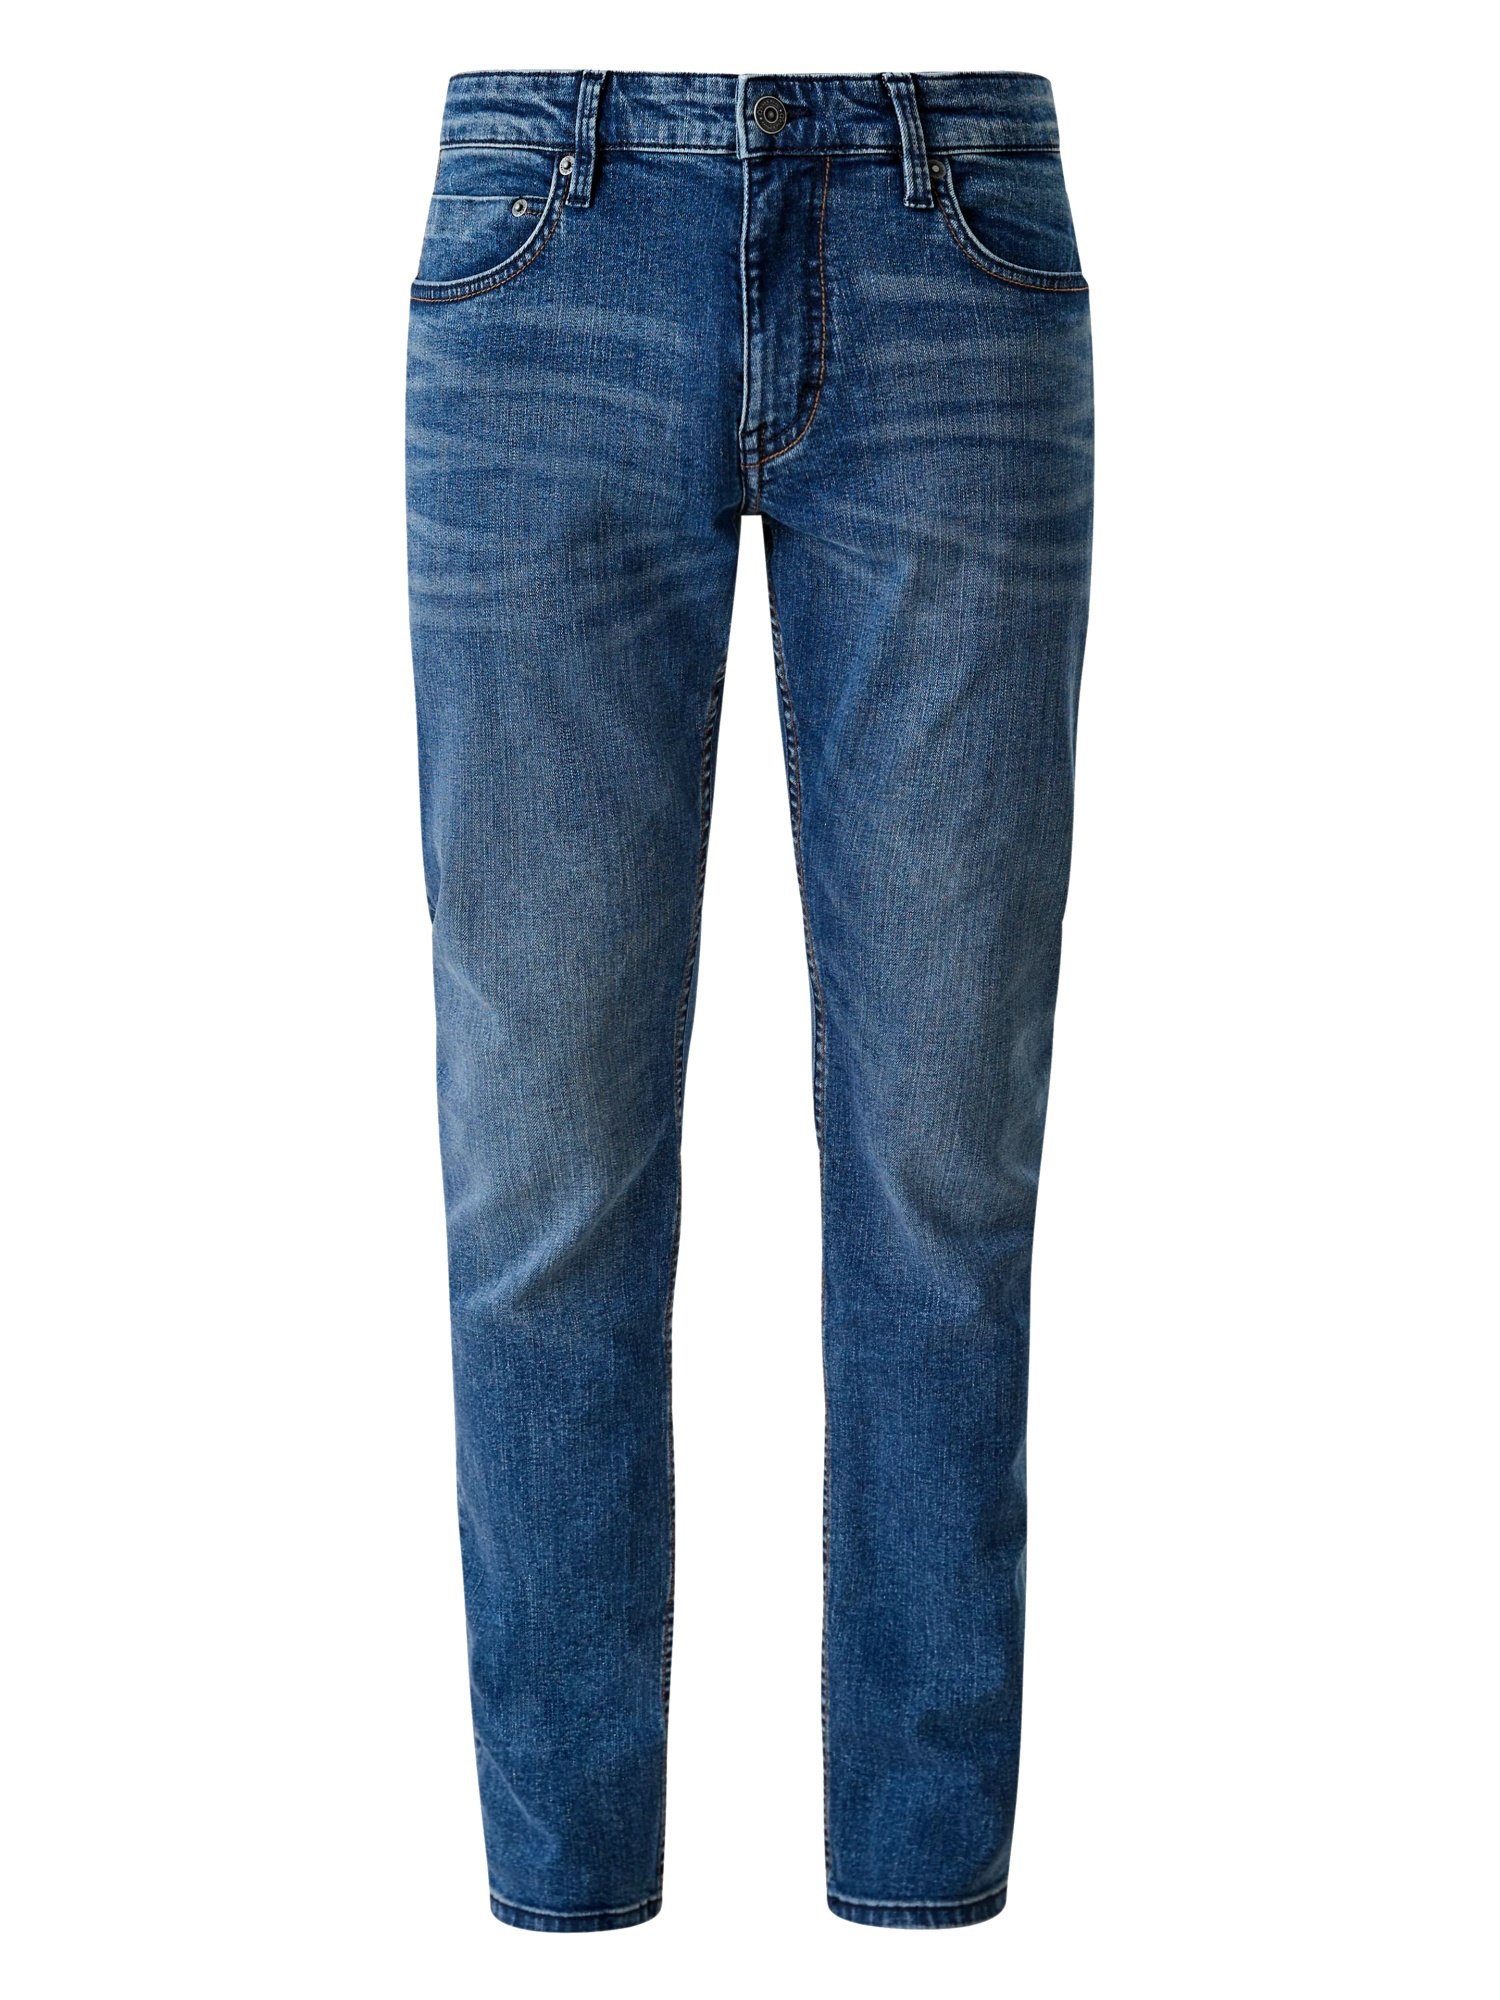 s.Oliver 5-Pocket-Jeans Hose Five-Pocket-Style Jeans Slim im